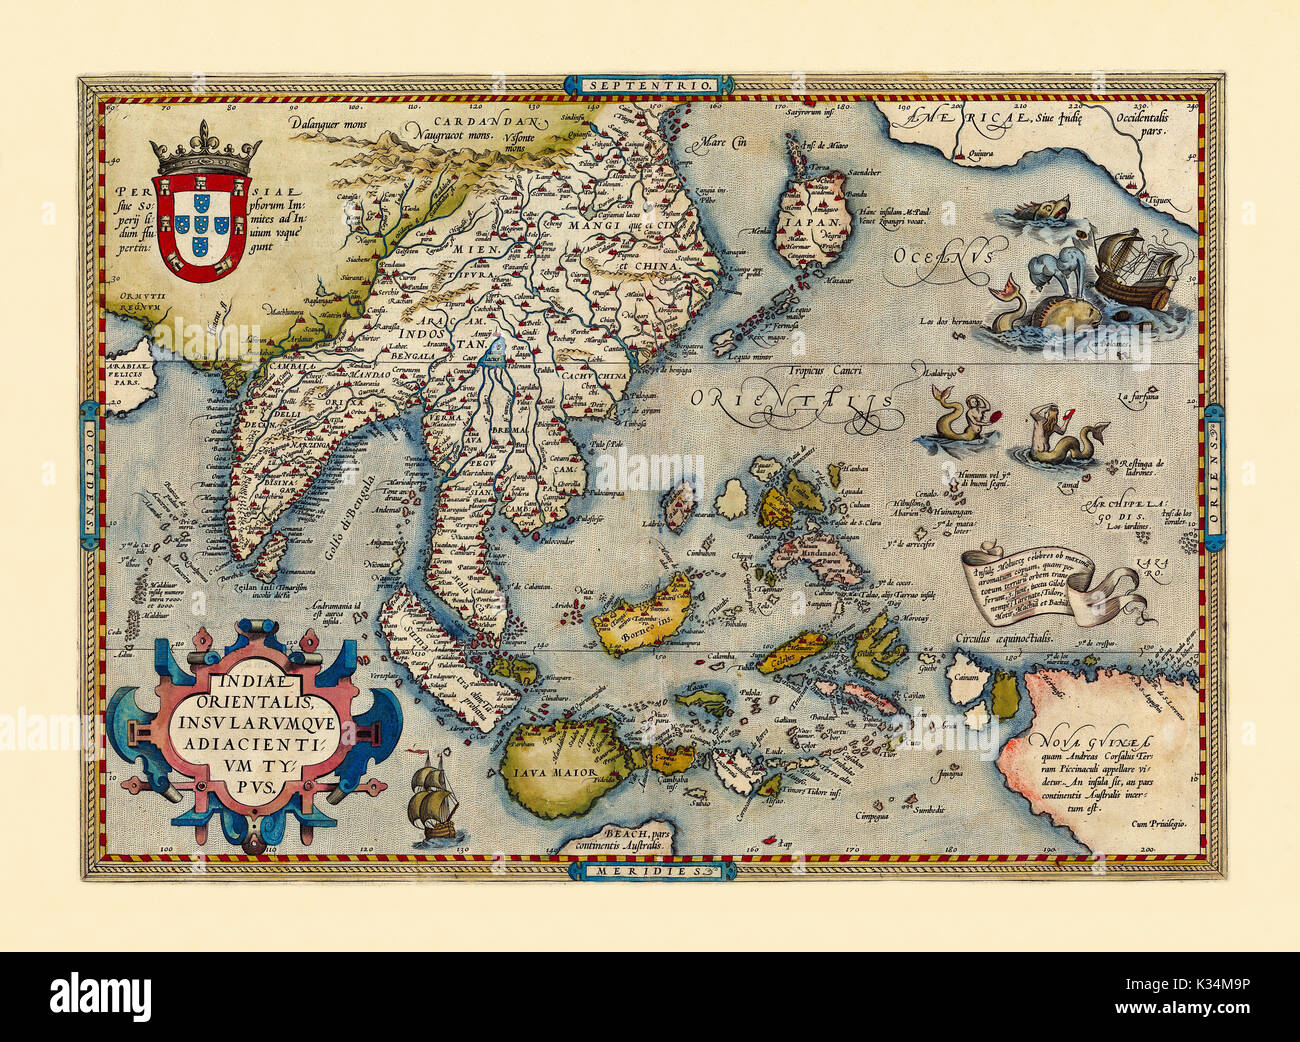 Mappa vecchia del sud-est asiatico. Stato di conservazione ottimo realizzato in stile antico. Tutta la composizione grafica è all'interno di un telaio. Da Ortelius, Theatrum Orbis Terrarum, Anversa, 1570 Foto Stock